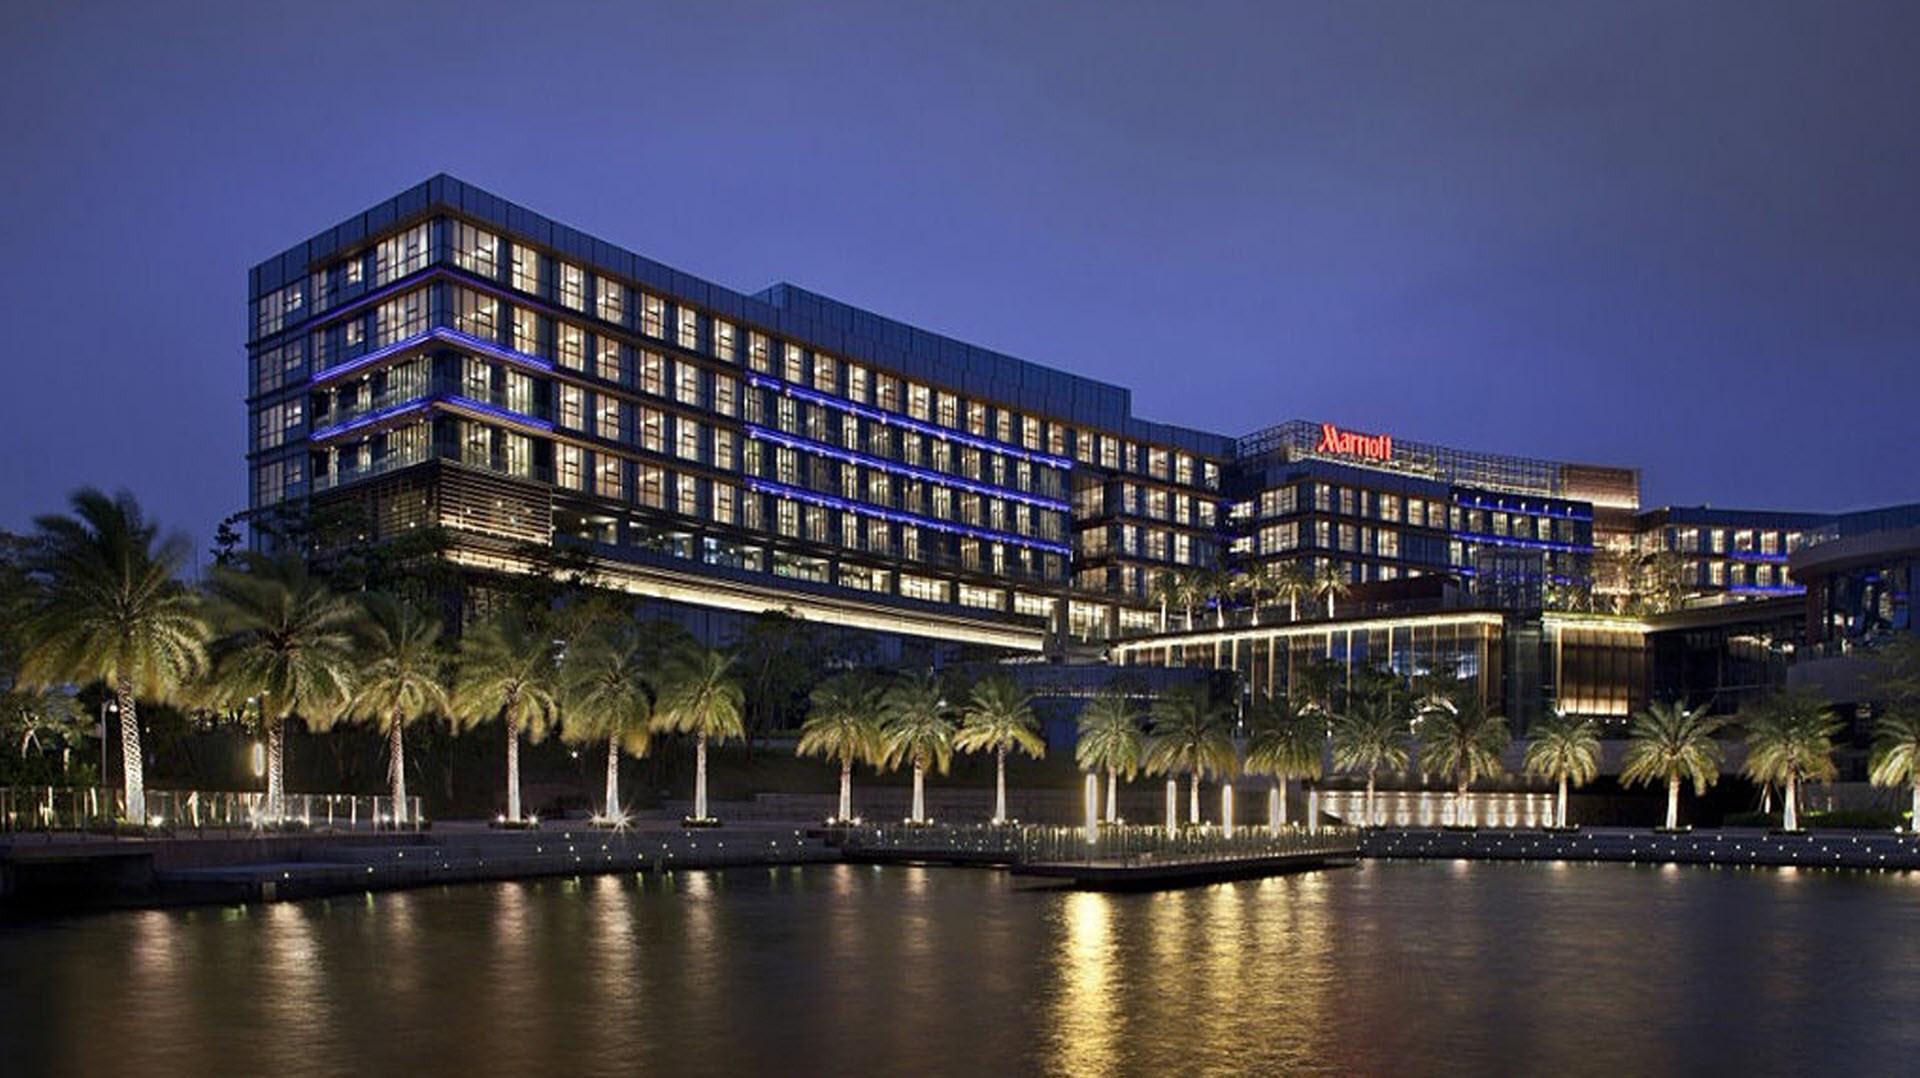 The OCT Harbour, Shenzhen - Marriott Executive Apartments in Shenzhen, CN